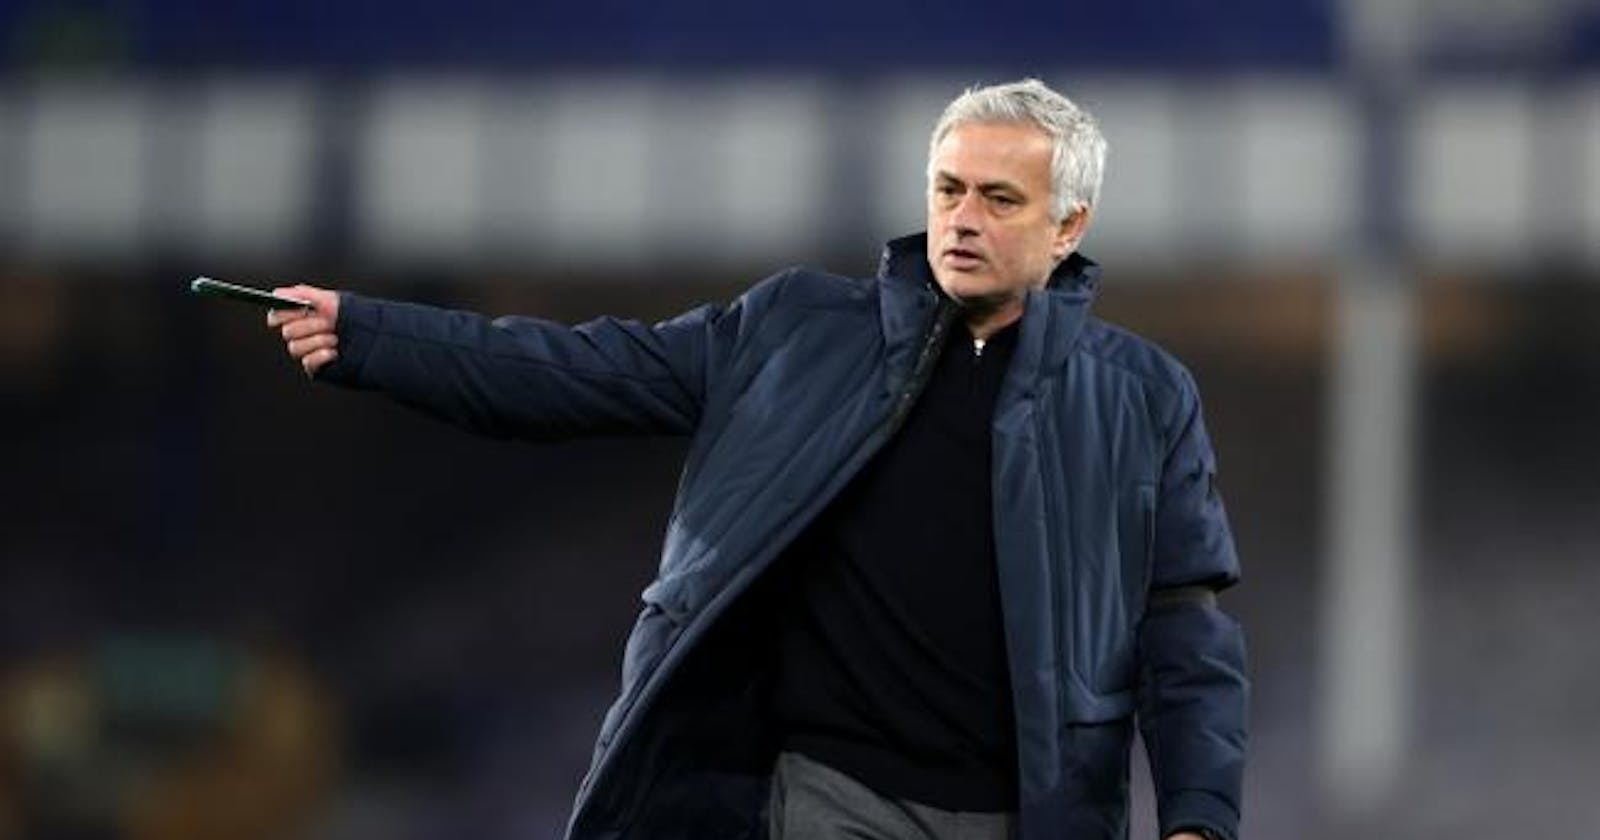 Jose Mourinho sacked as Tottenham Hotspur manager